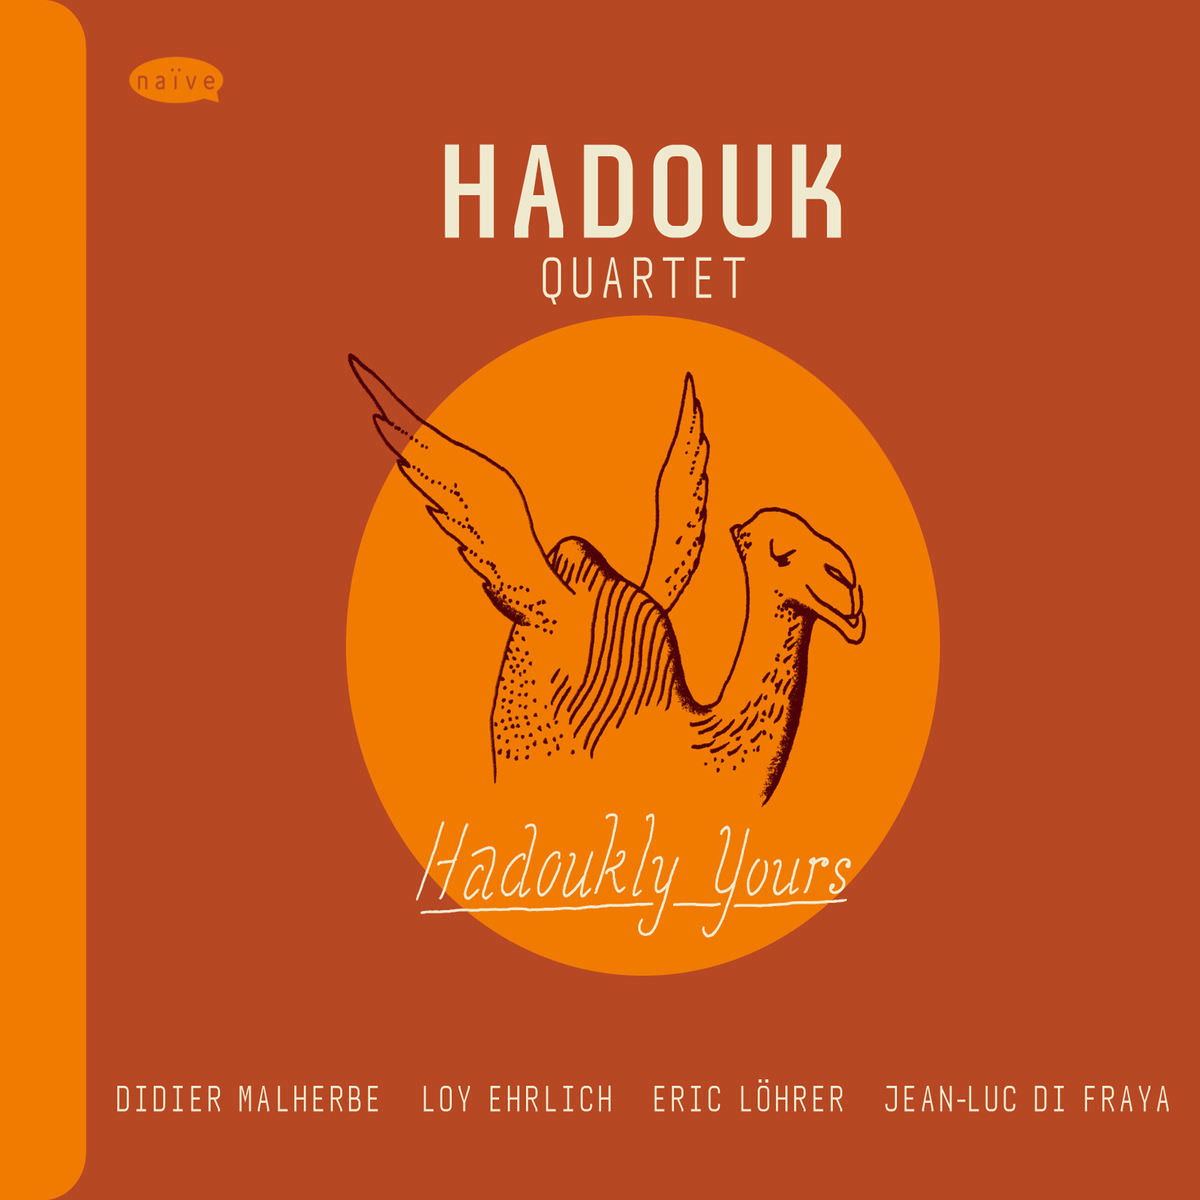 Hadouk Quartet - Hadoukly Yours (2013) [FLAC 24bit/88,2kHz]